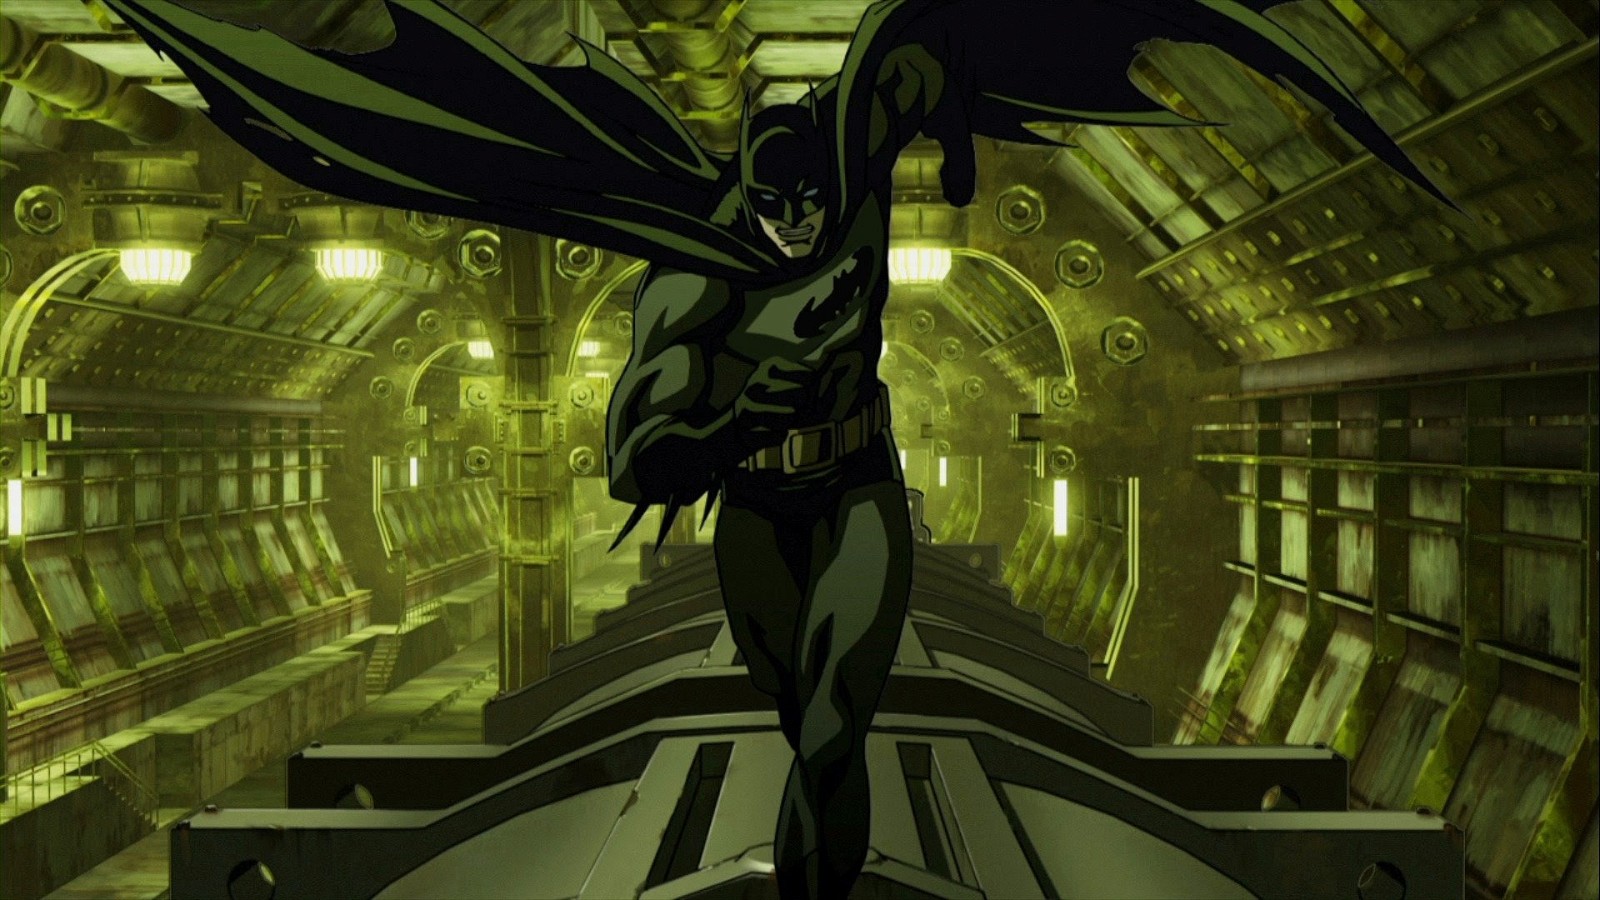 Batman runs on top of a train in tunnel in Batman: Gotham Knight